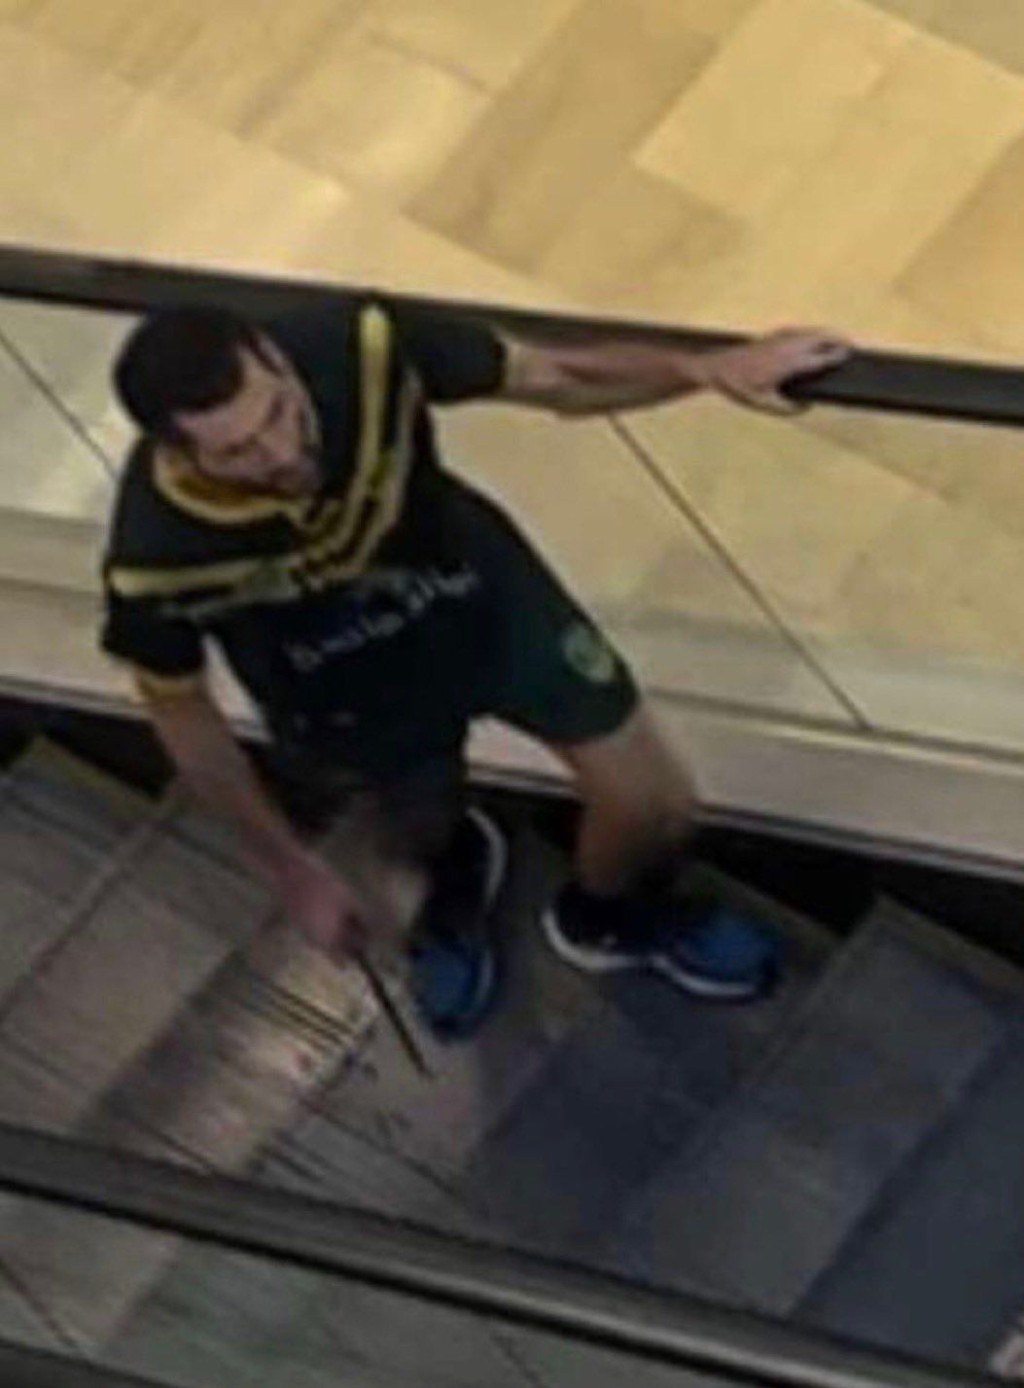 凶手在购物中心内持刀在扶手电梯上奔跑。